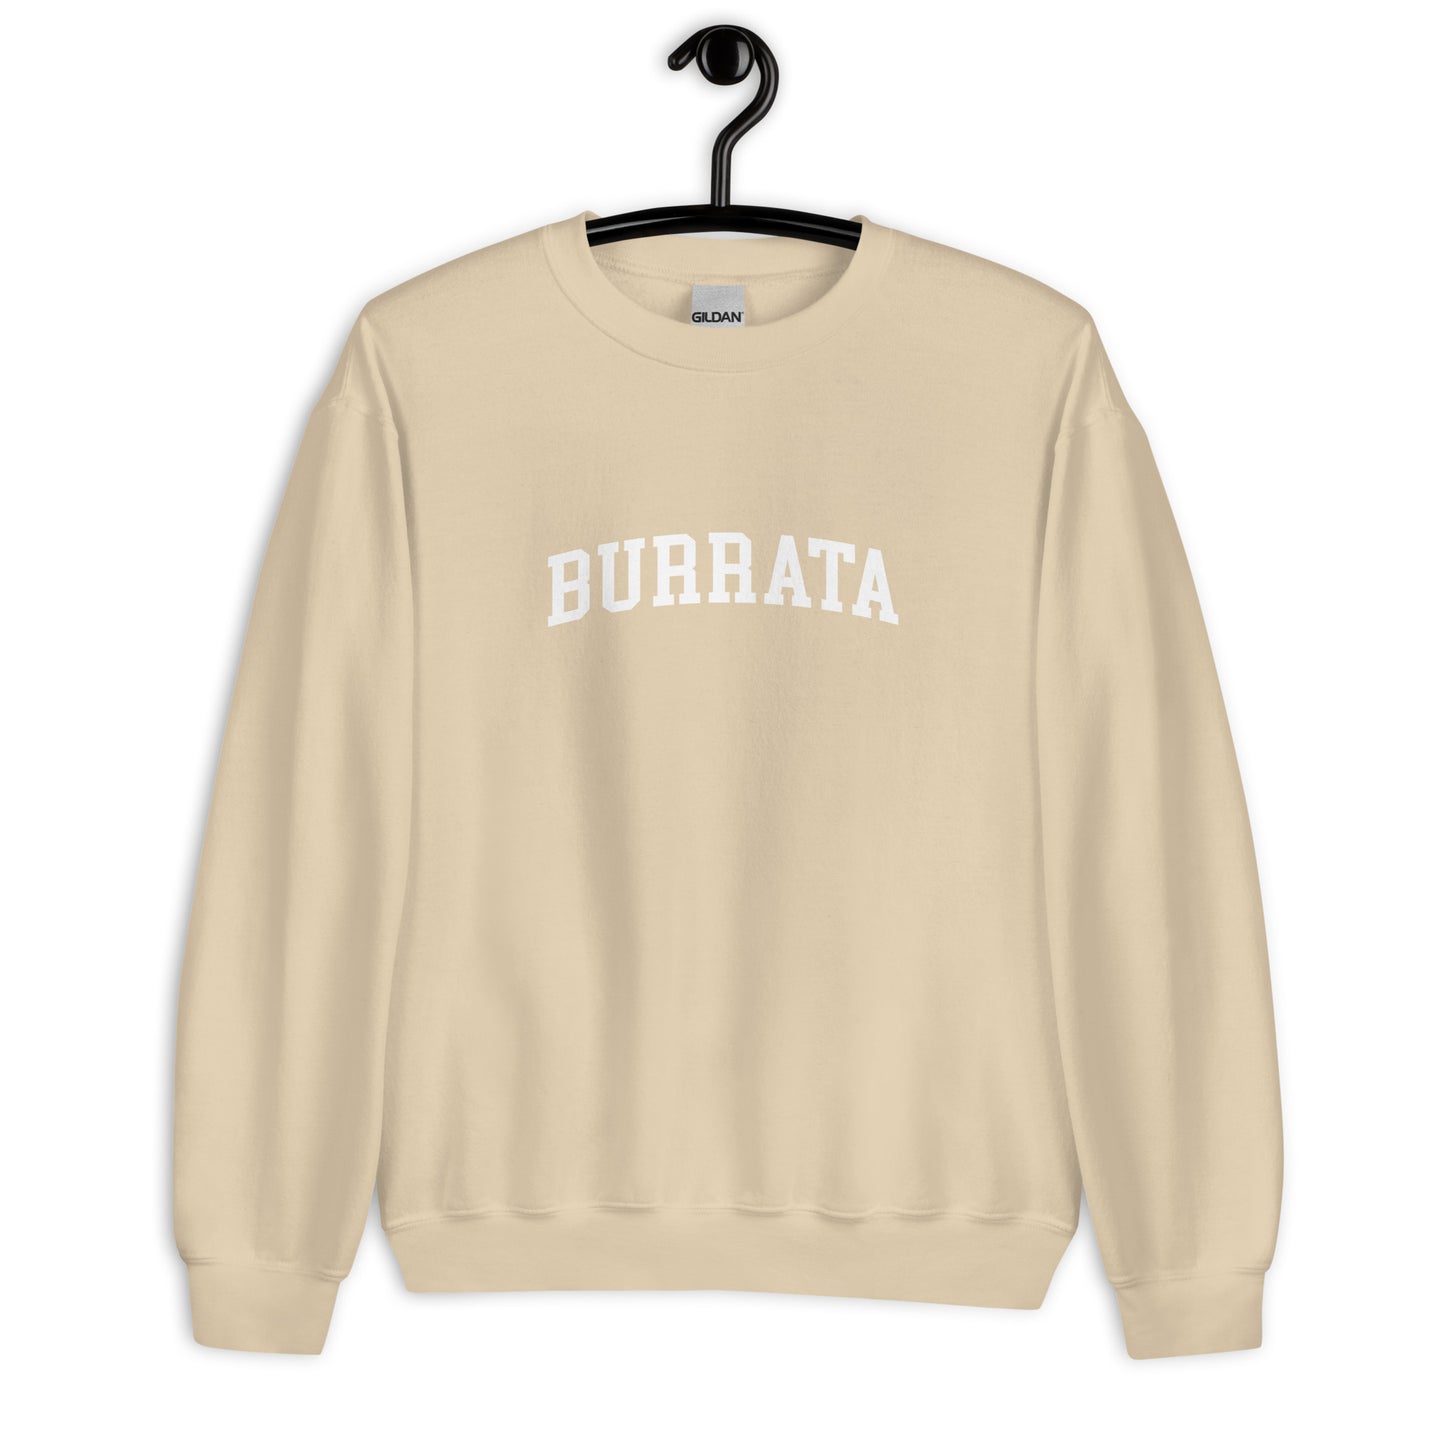 Burrata Sweatshirt - Arched Font